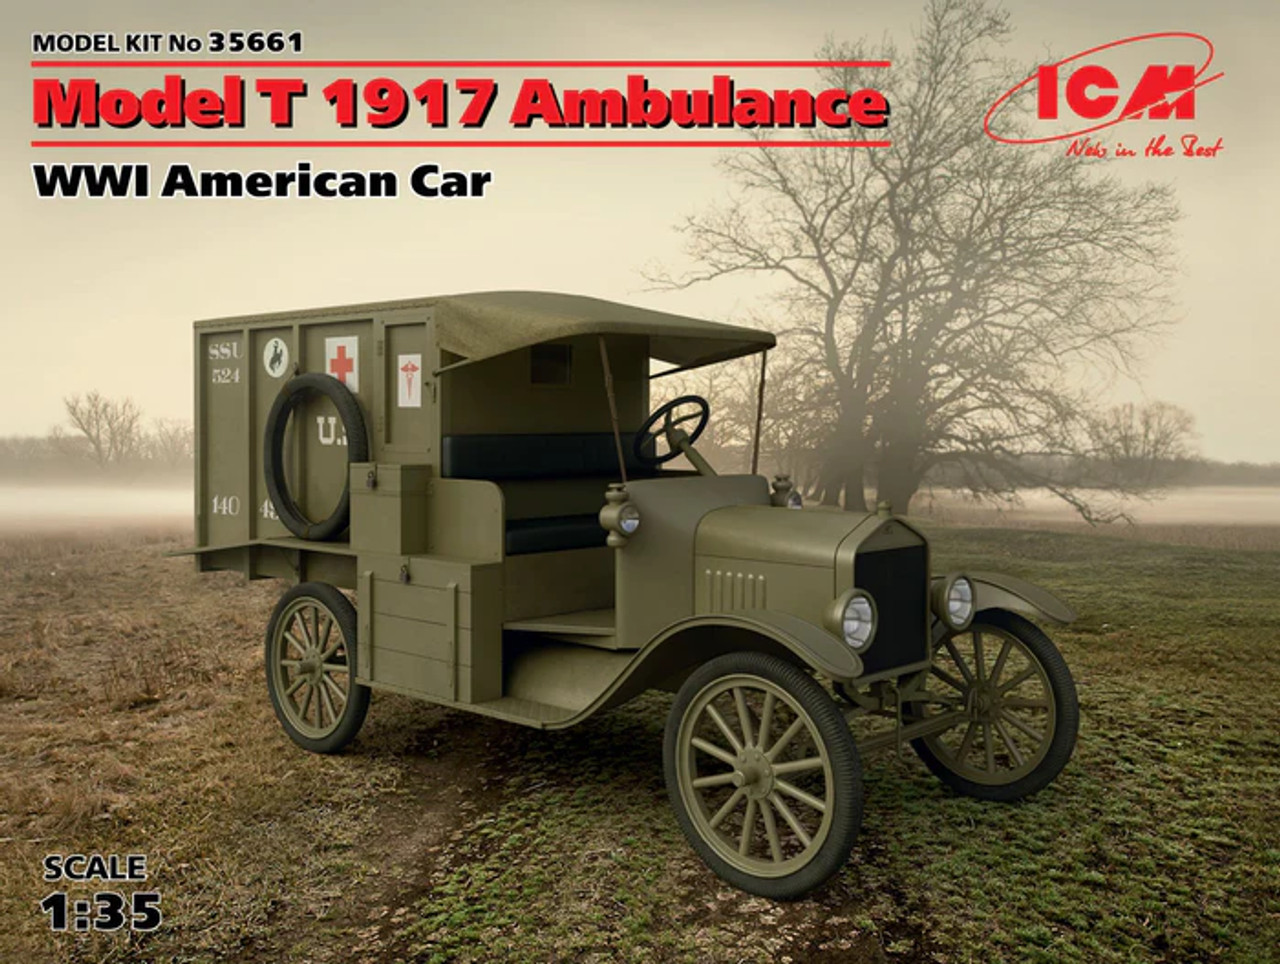 1/35 MODEL T 1917 AMBULANCE - 35661